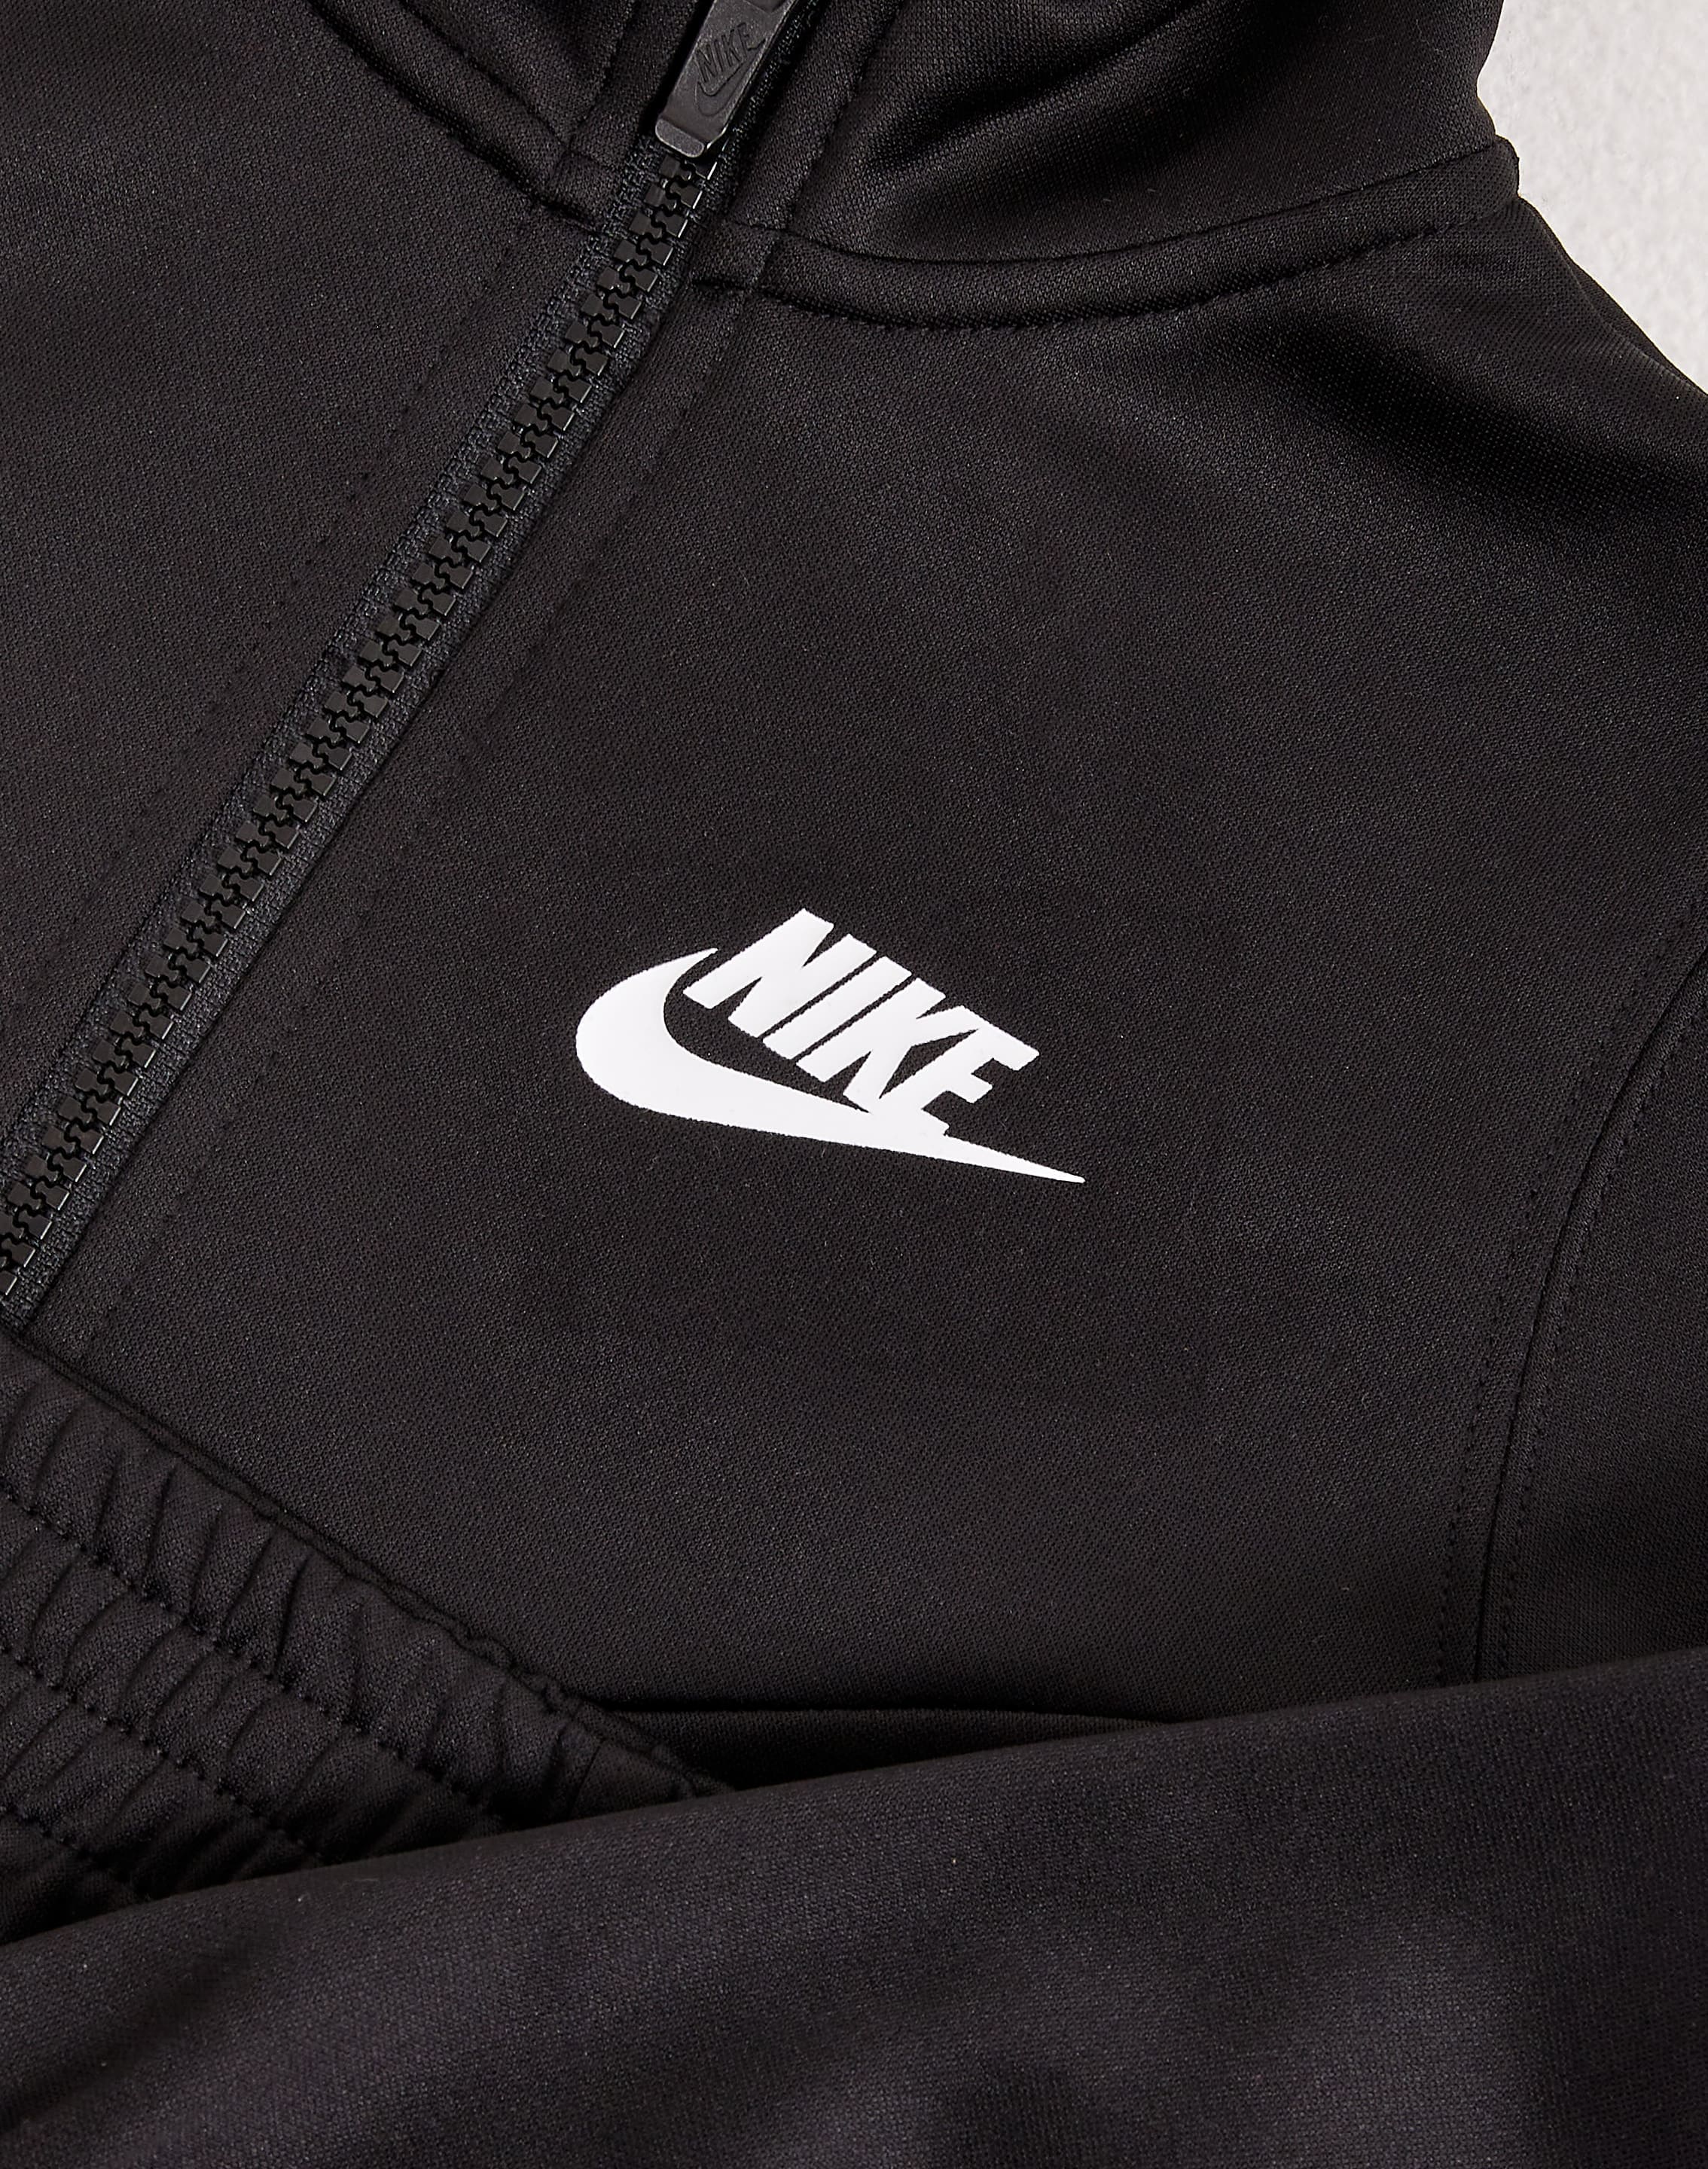 Nike Fleece Tracksuits Sets